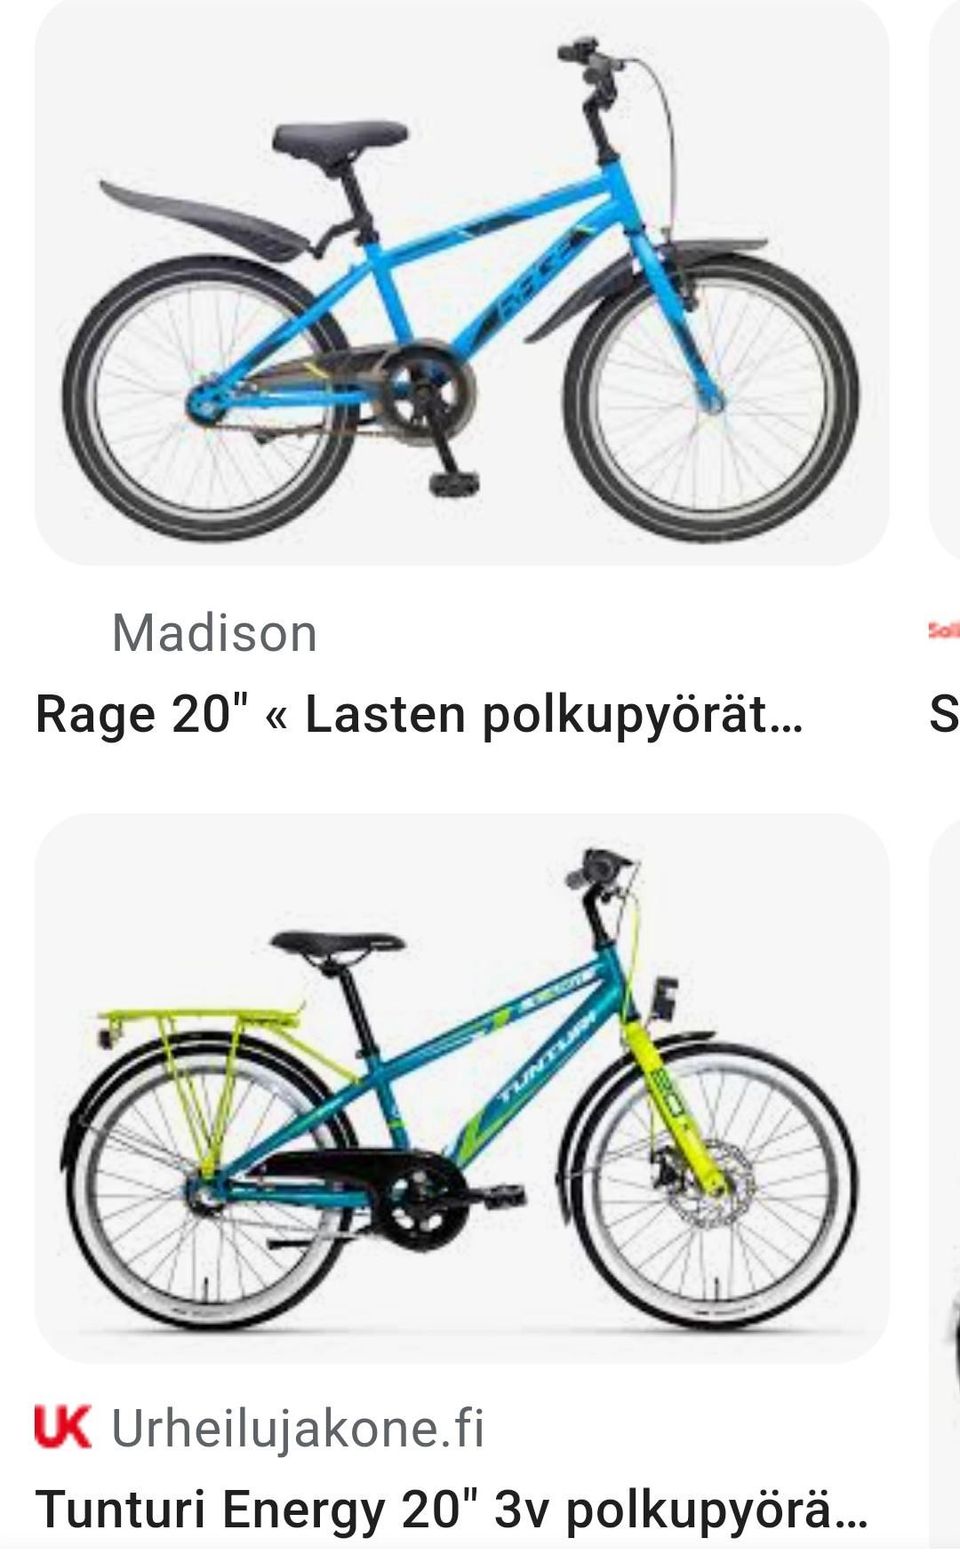 Ostetaan lasten 20" polkupyörä